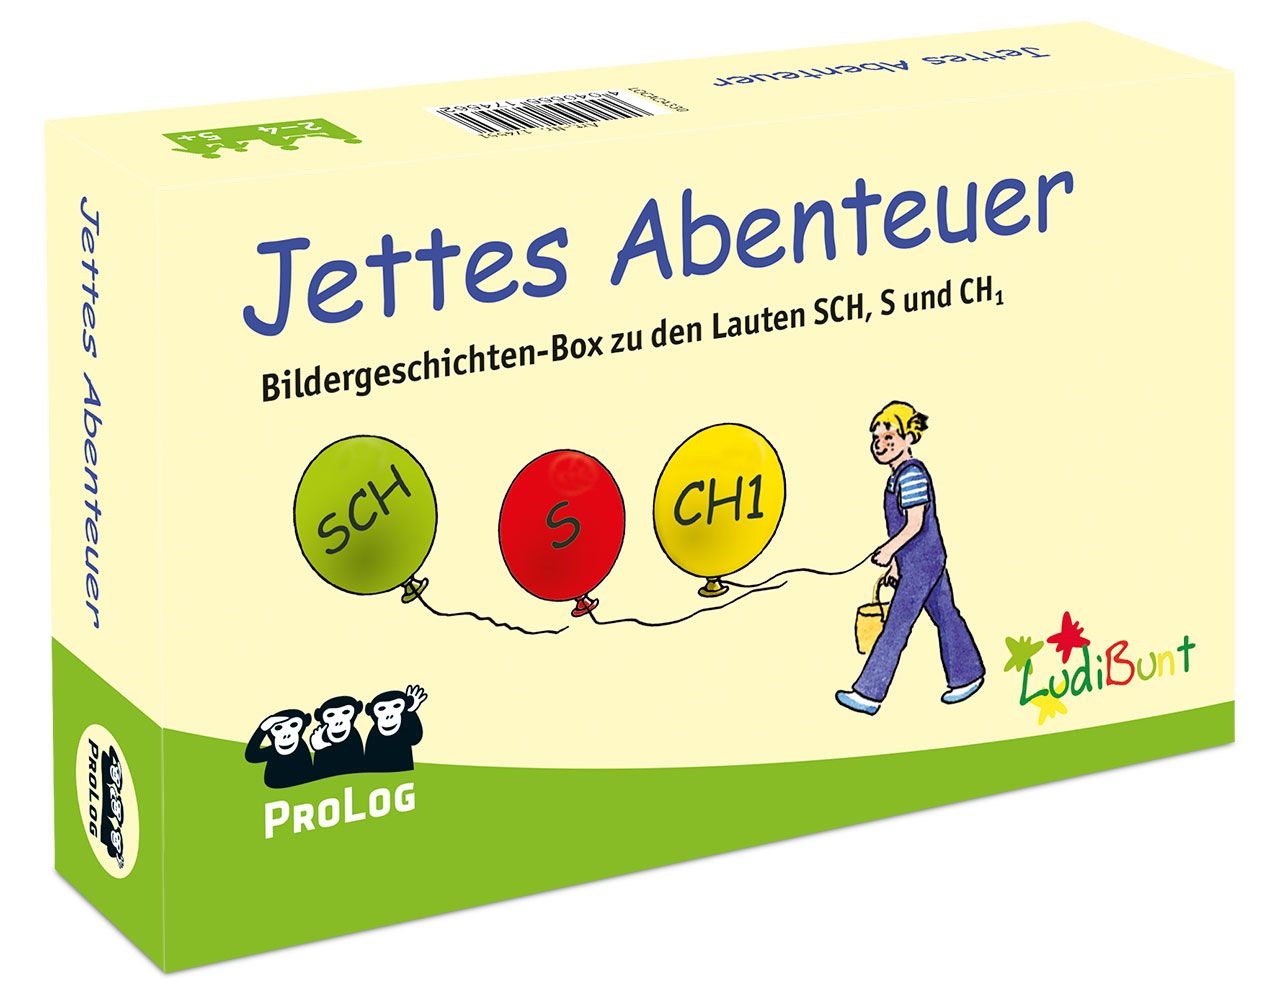 Bildergeschichtenbox - Jettes Abenteuer" SCH, CH1, S